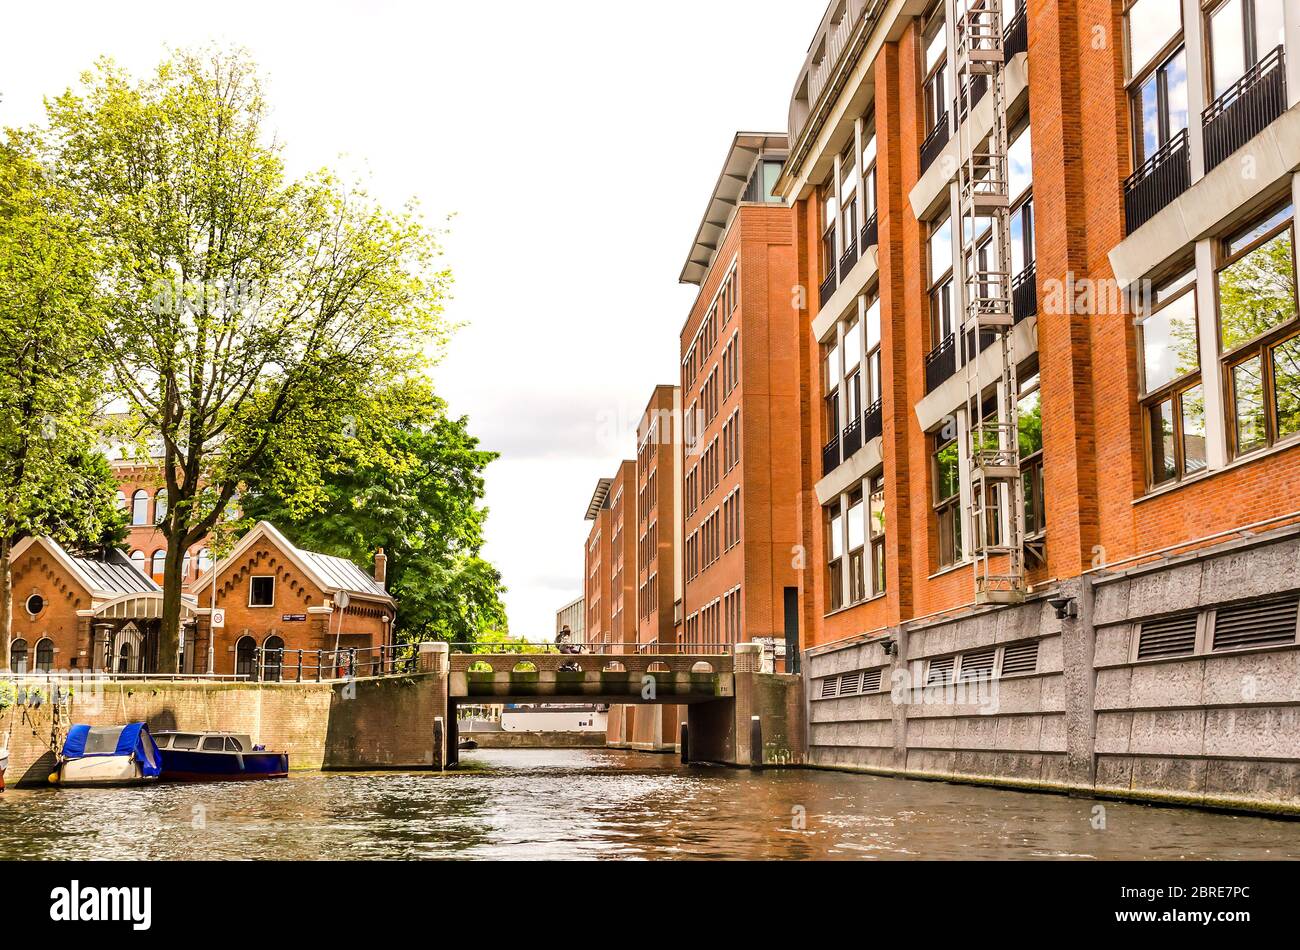 AMSTERDAM, HOLANDA – AGO. 31, 2019: Hermosa vista de los canales de Amsterdam con puente y casas típicas holandesas. La ciudad tiene más de 1500 puentes. Foto de stock